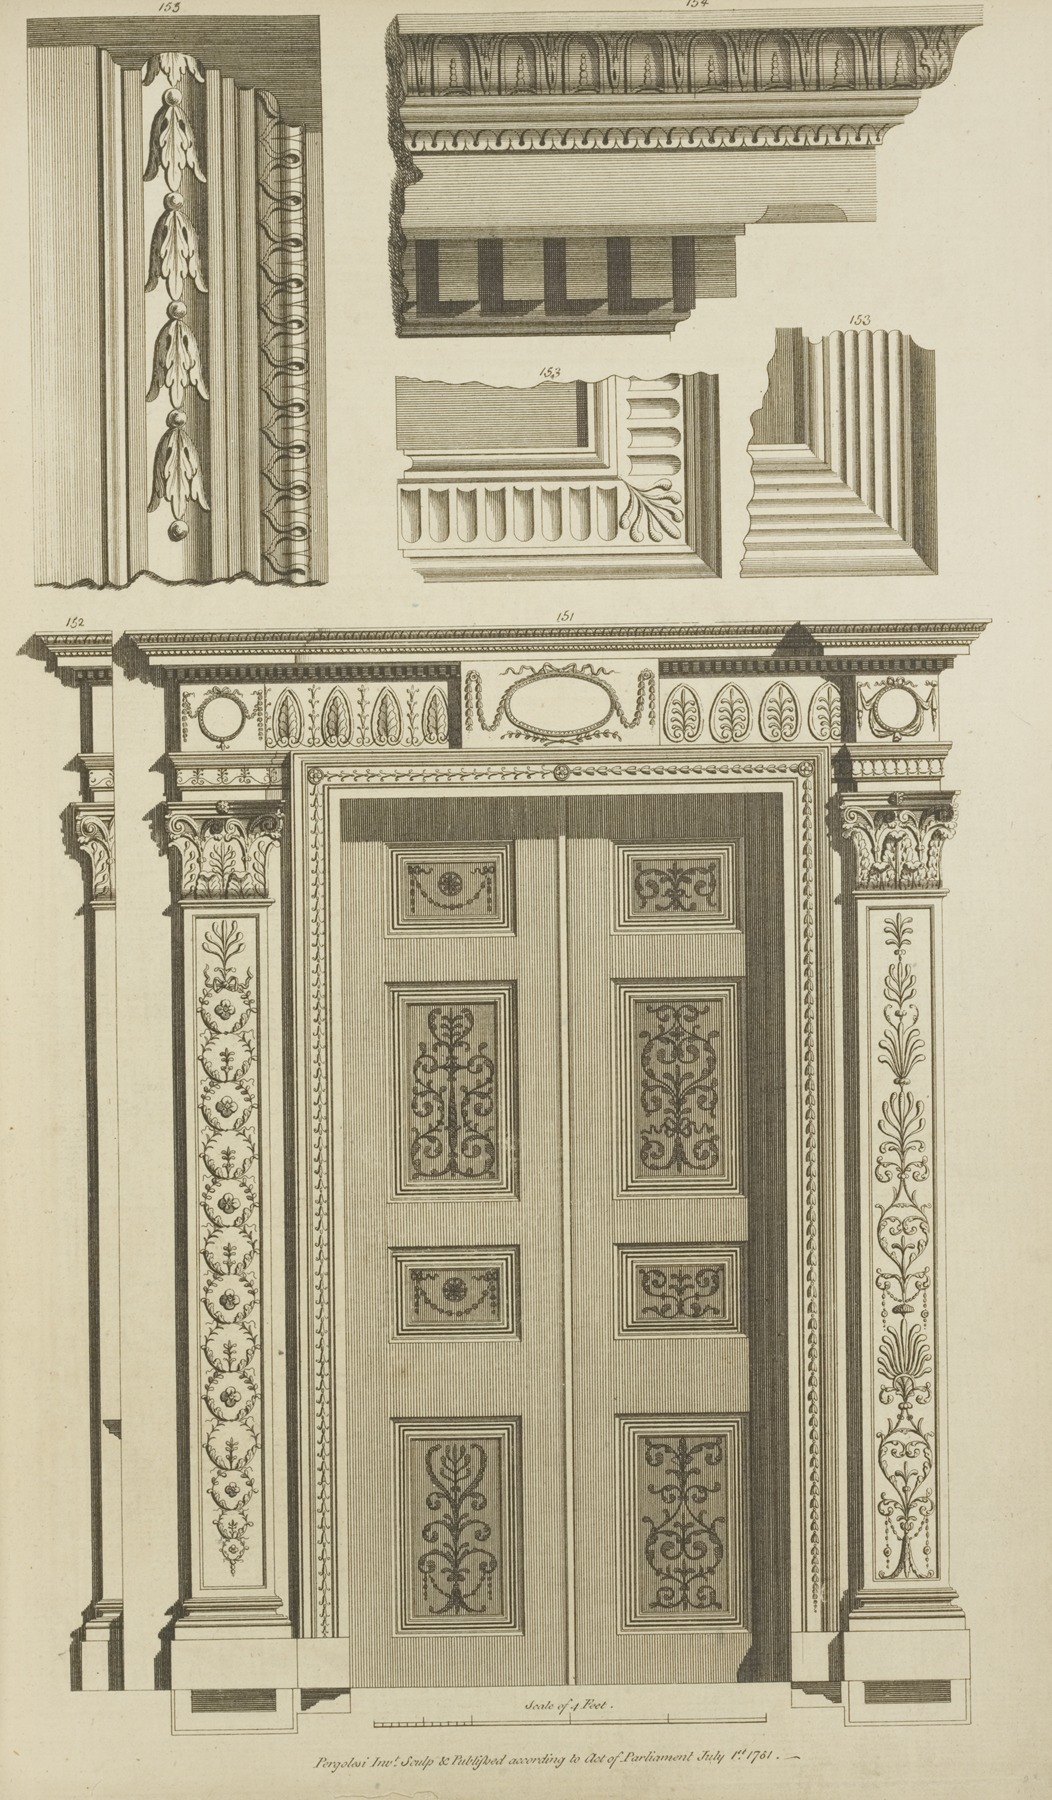 Michel Angelo Pergolesi - Bottom design of paneled door and door frame.